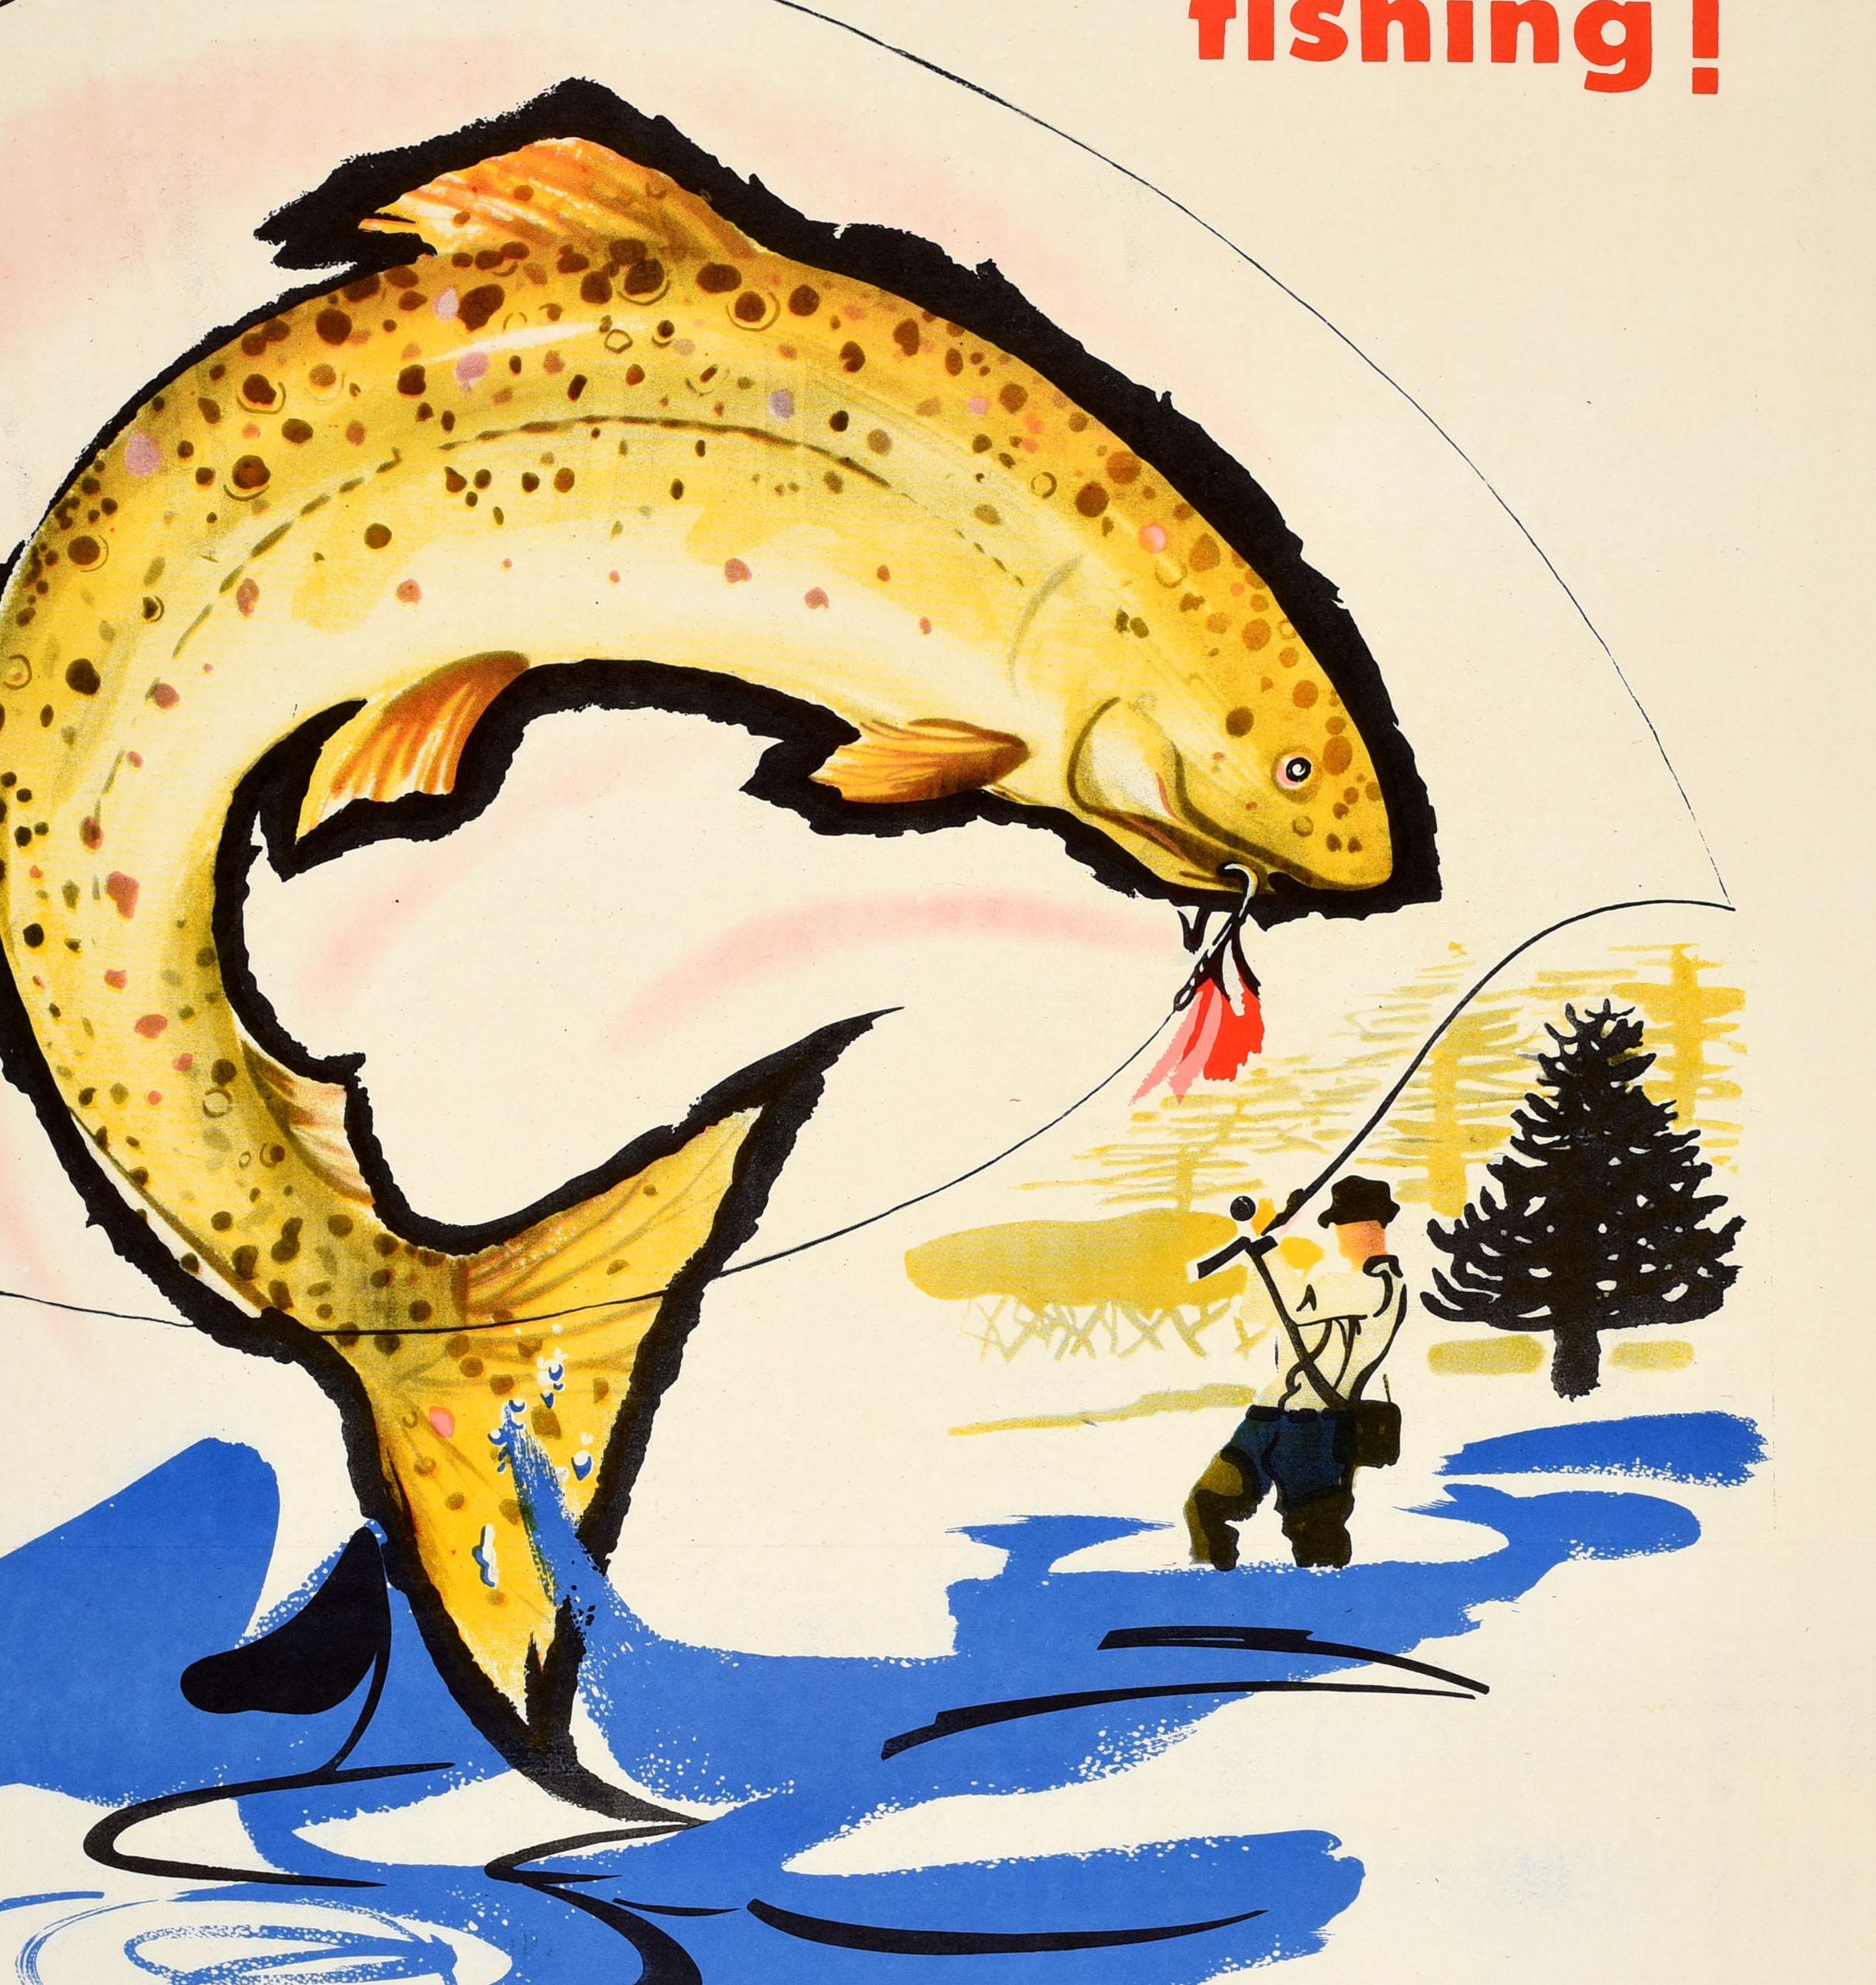 Affiche de voyage vintage originale faisant la promotion de la pêche en Argentine, émise par la Direccion Nacional de Turismo / Direction nationale du tourisme. L'illustration dynamique représente une truite capturée par un hameçon à l'aide d'une